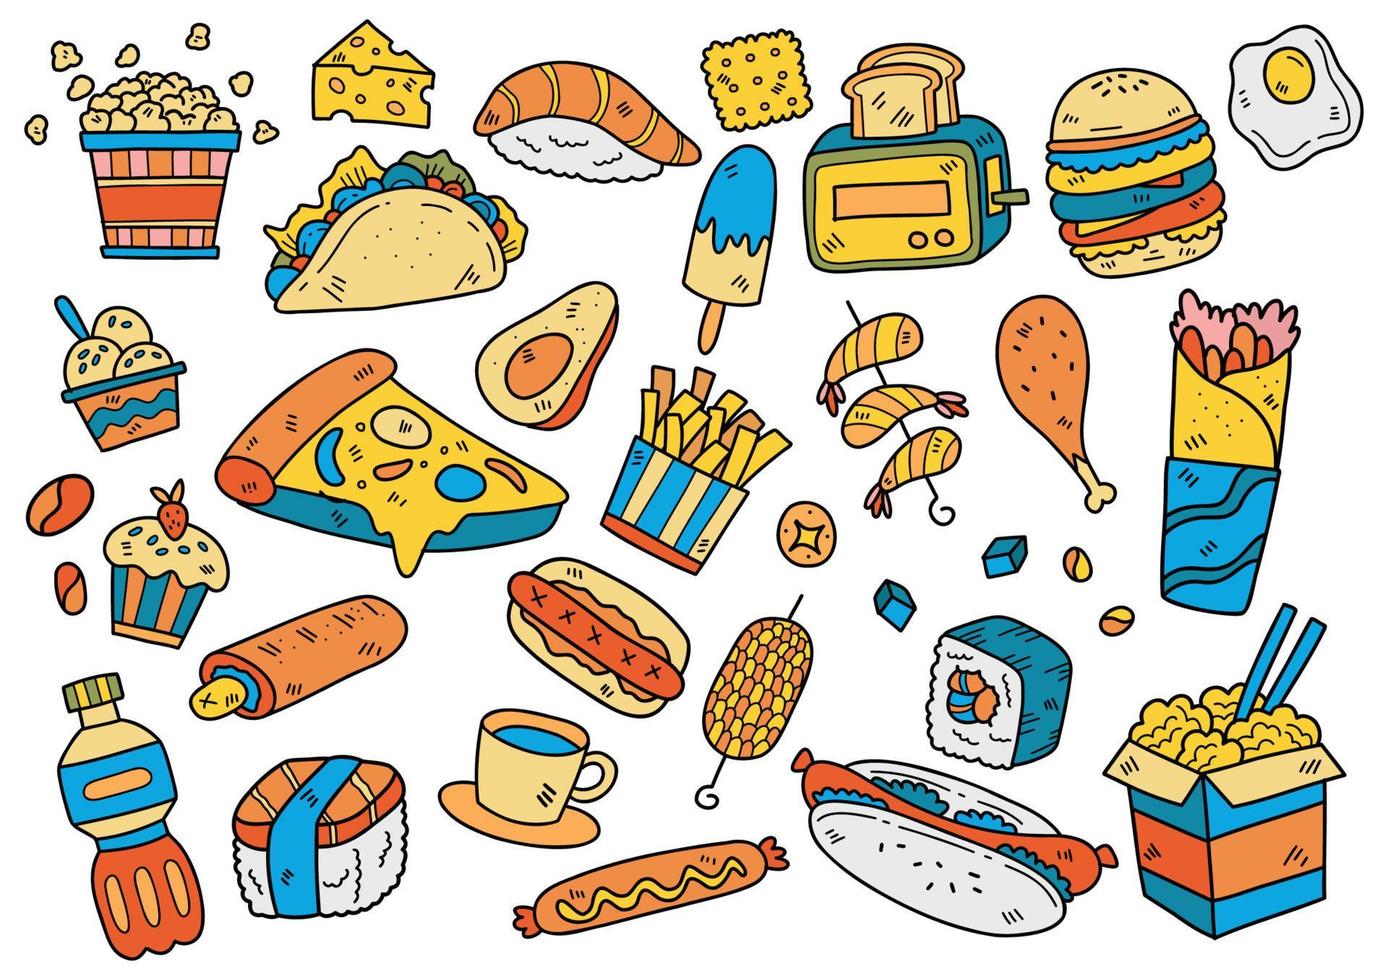 comida doodle objetos vector ilustración para banner